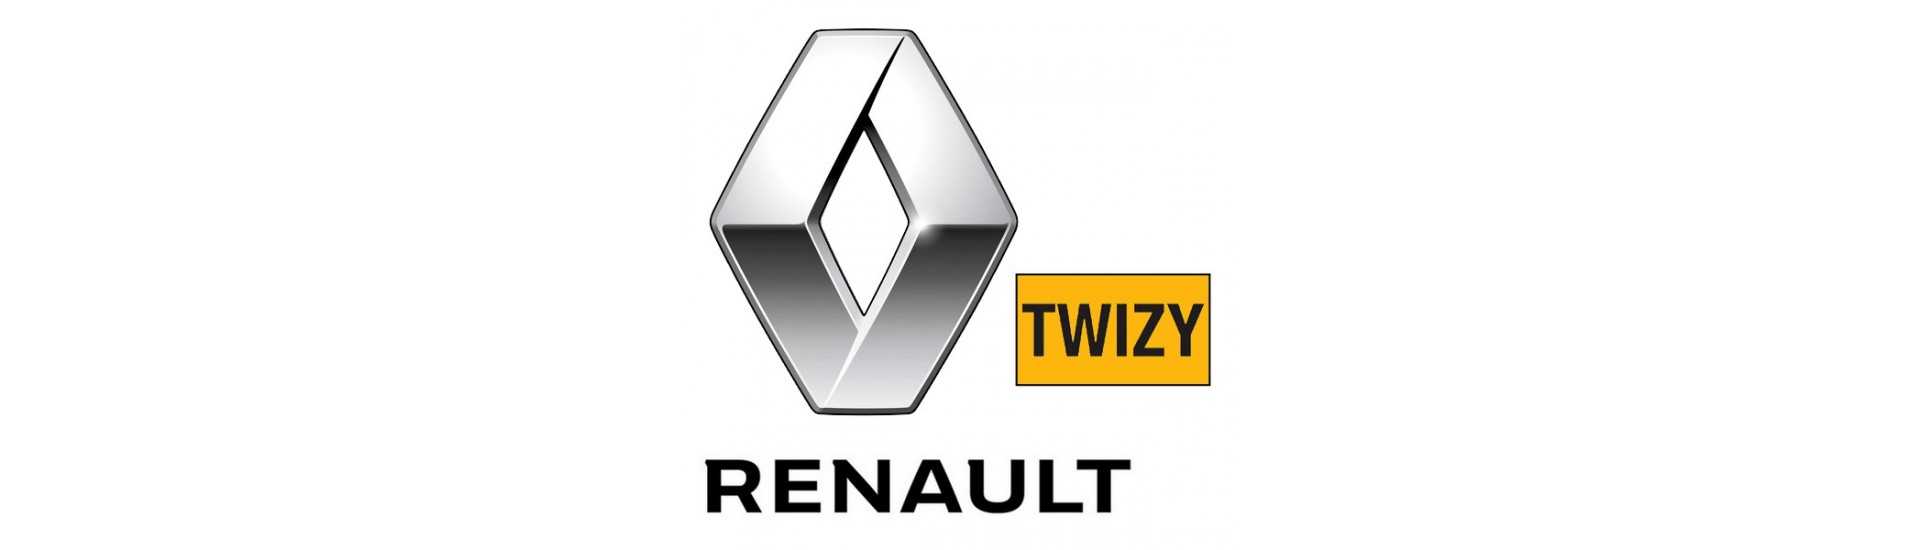 Hiljainen lohko parhaaseen hintaan ilman lisenssiä Renault Twizy